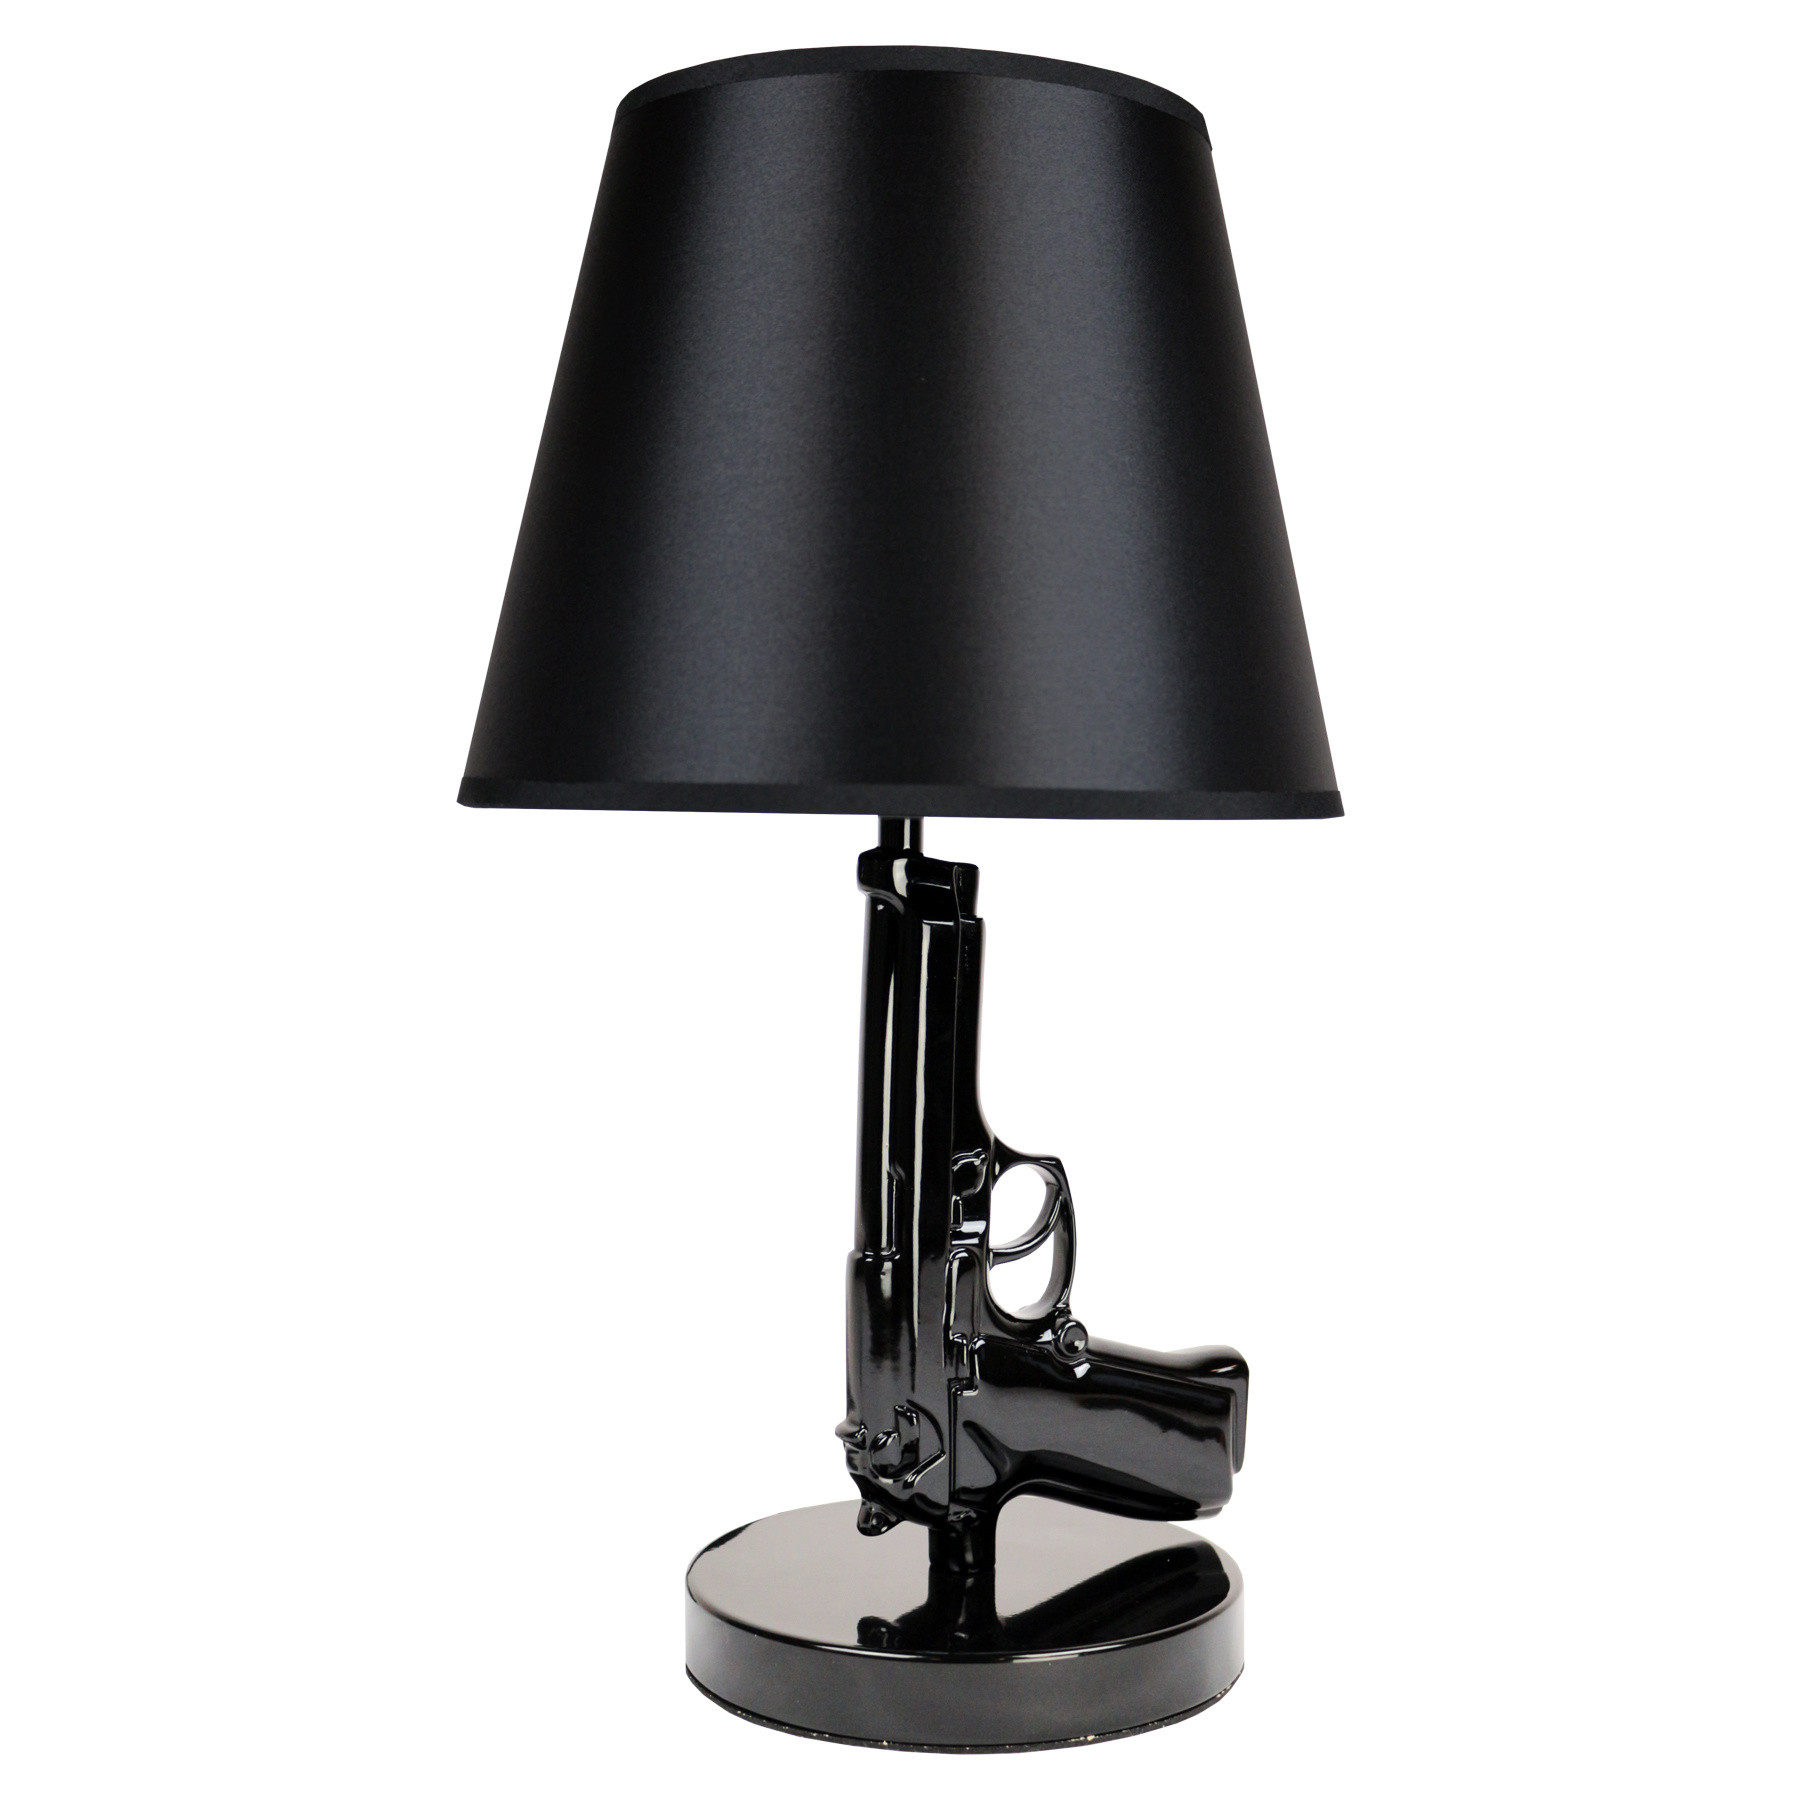 Tafellamp Beretta 9mm Gun Lamp Zwart